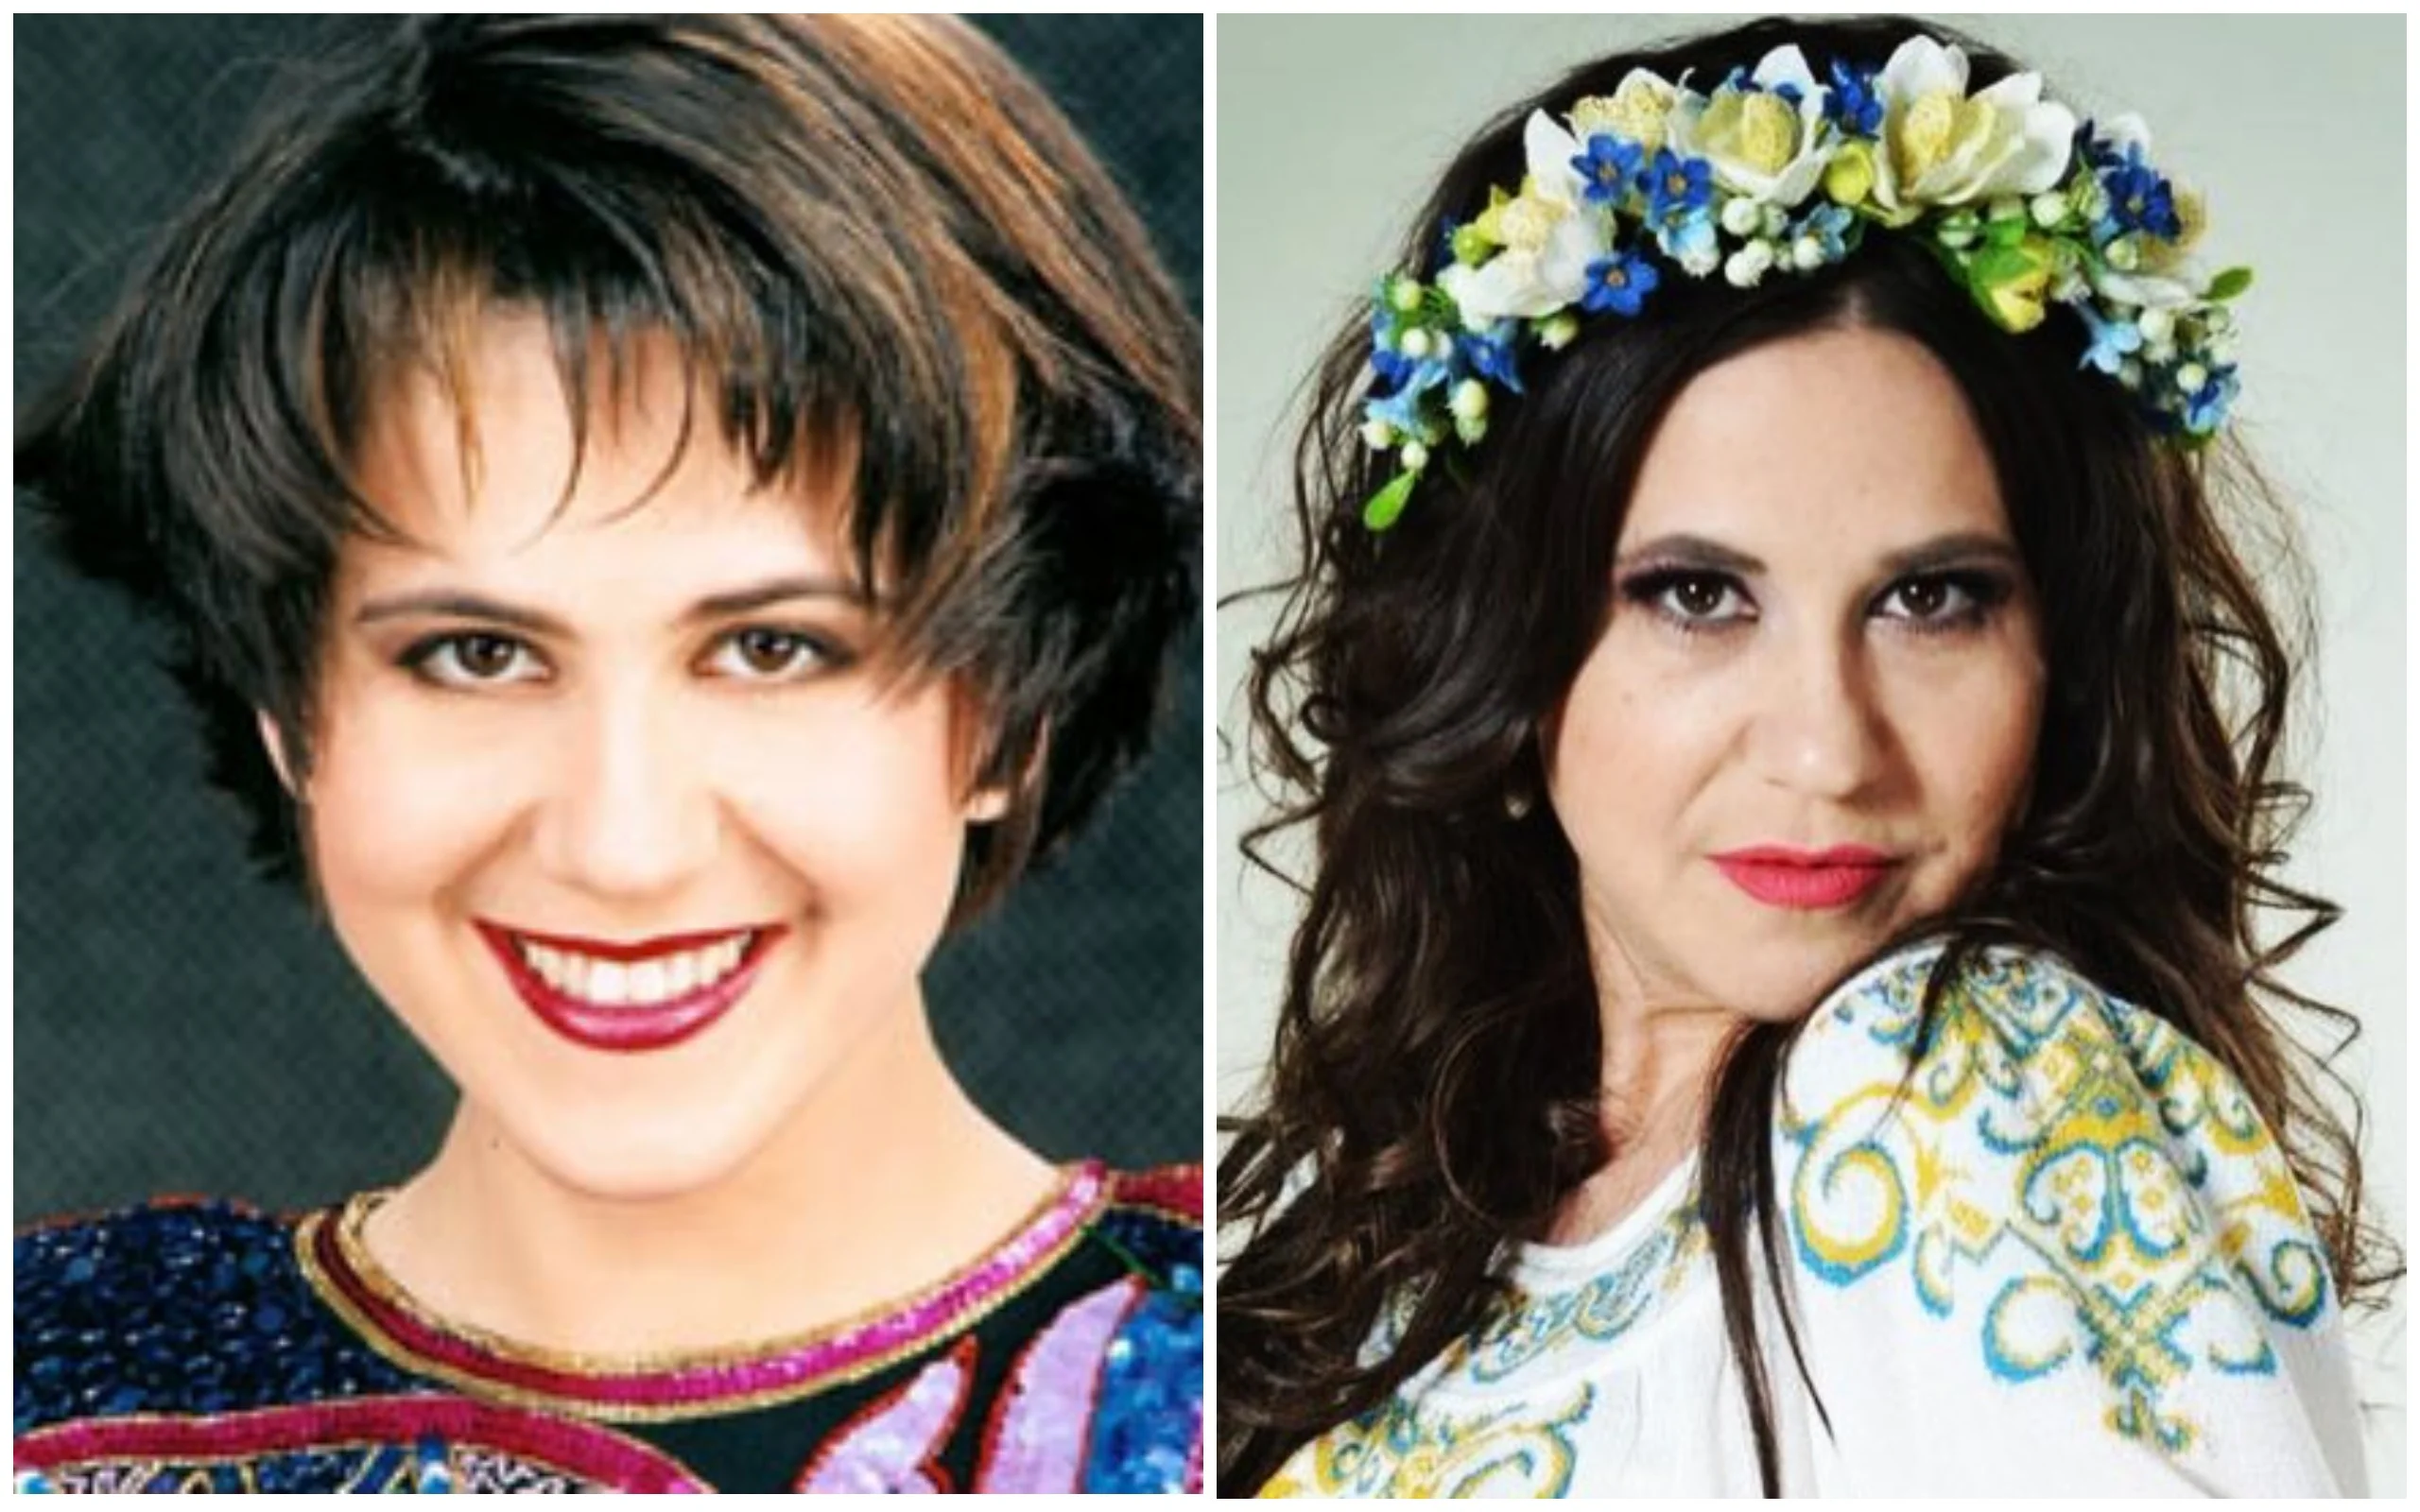 Тогда и сейчас: как с возрастом изменились украинские певцы 90-х - фото 394877